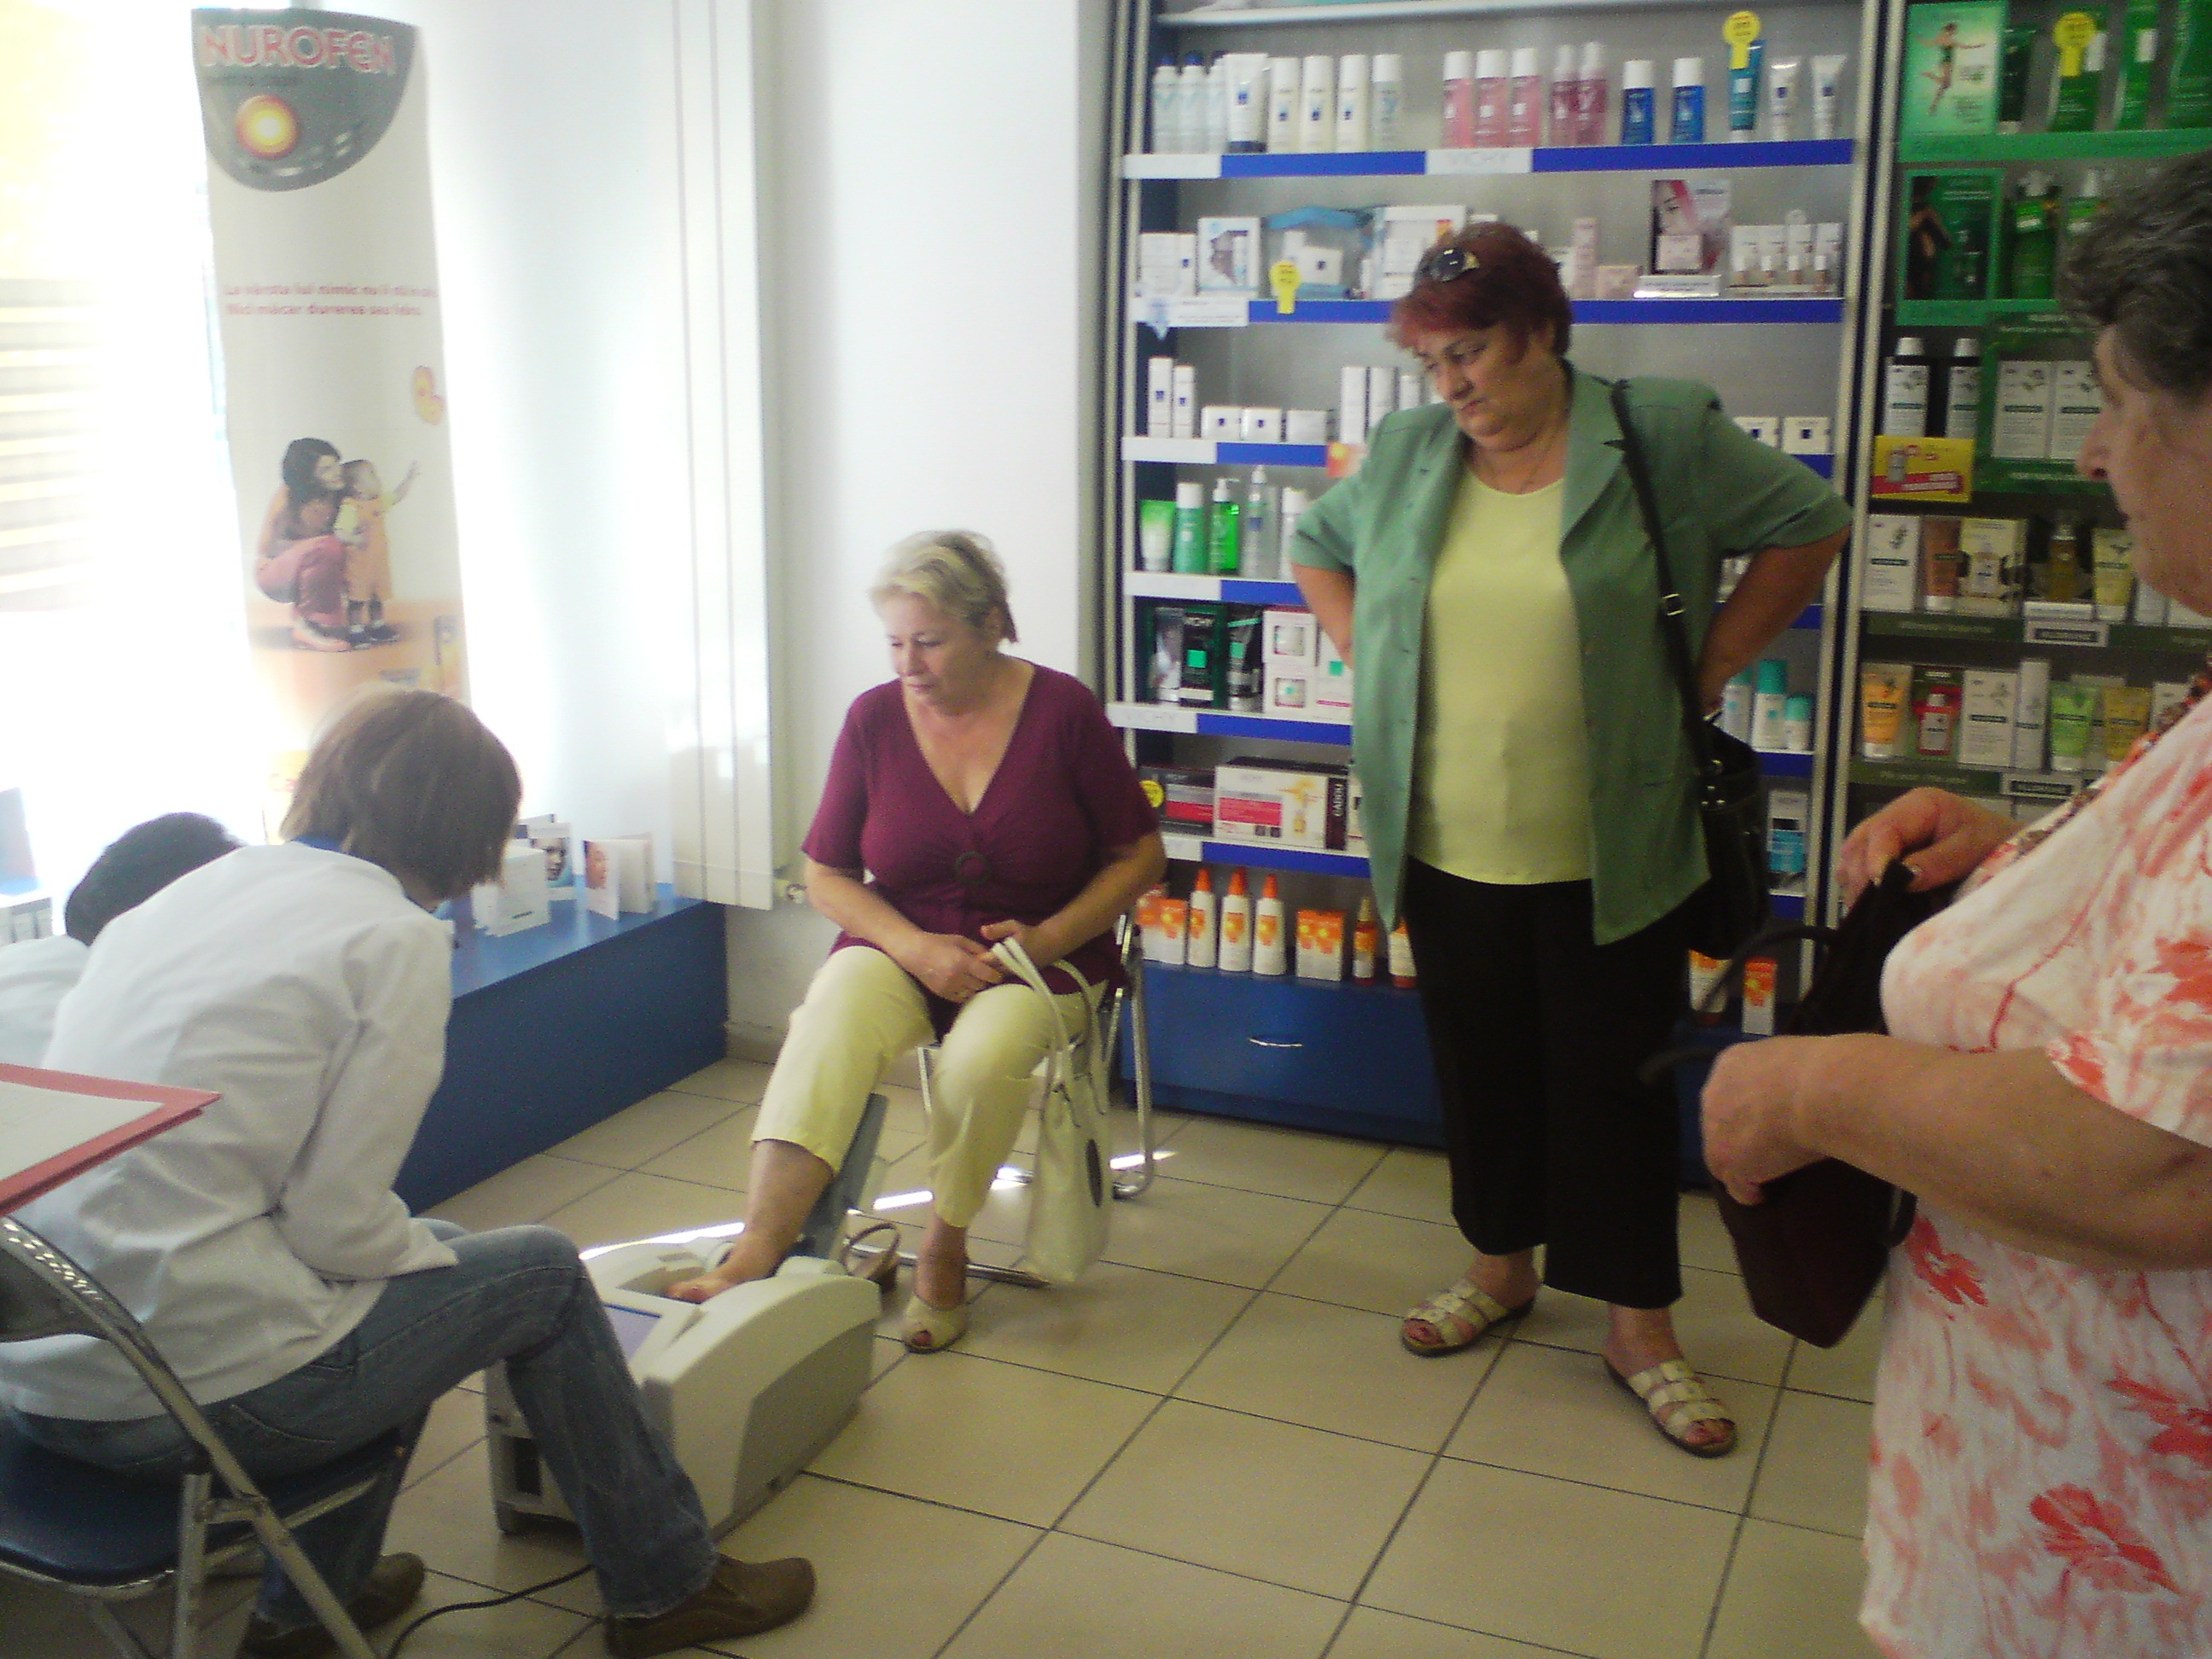 Jumatate din femeile din Romania prezinta un risc important de osteoporoza